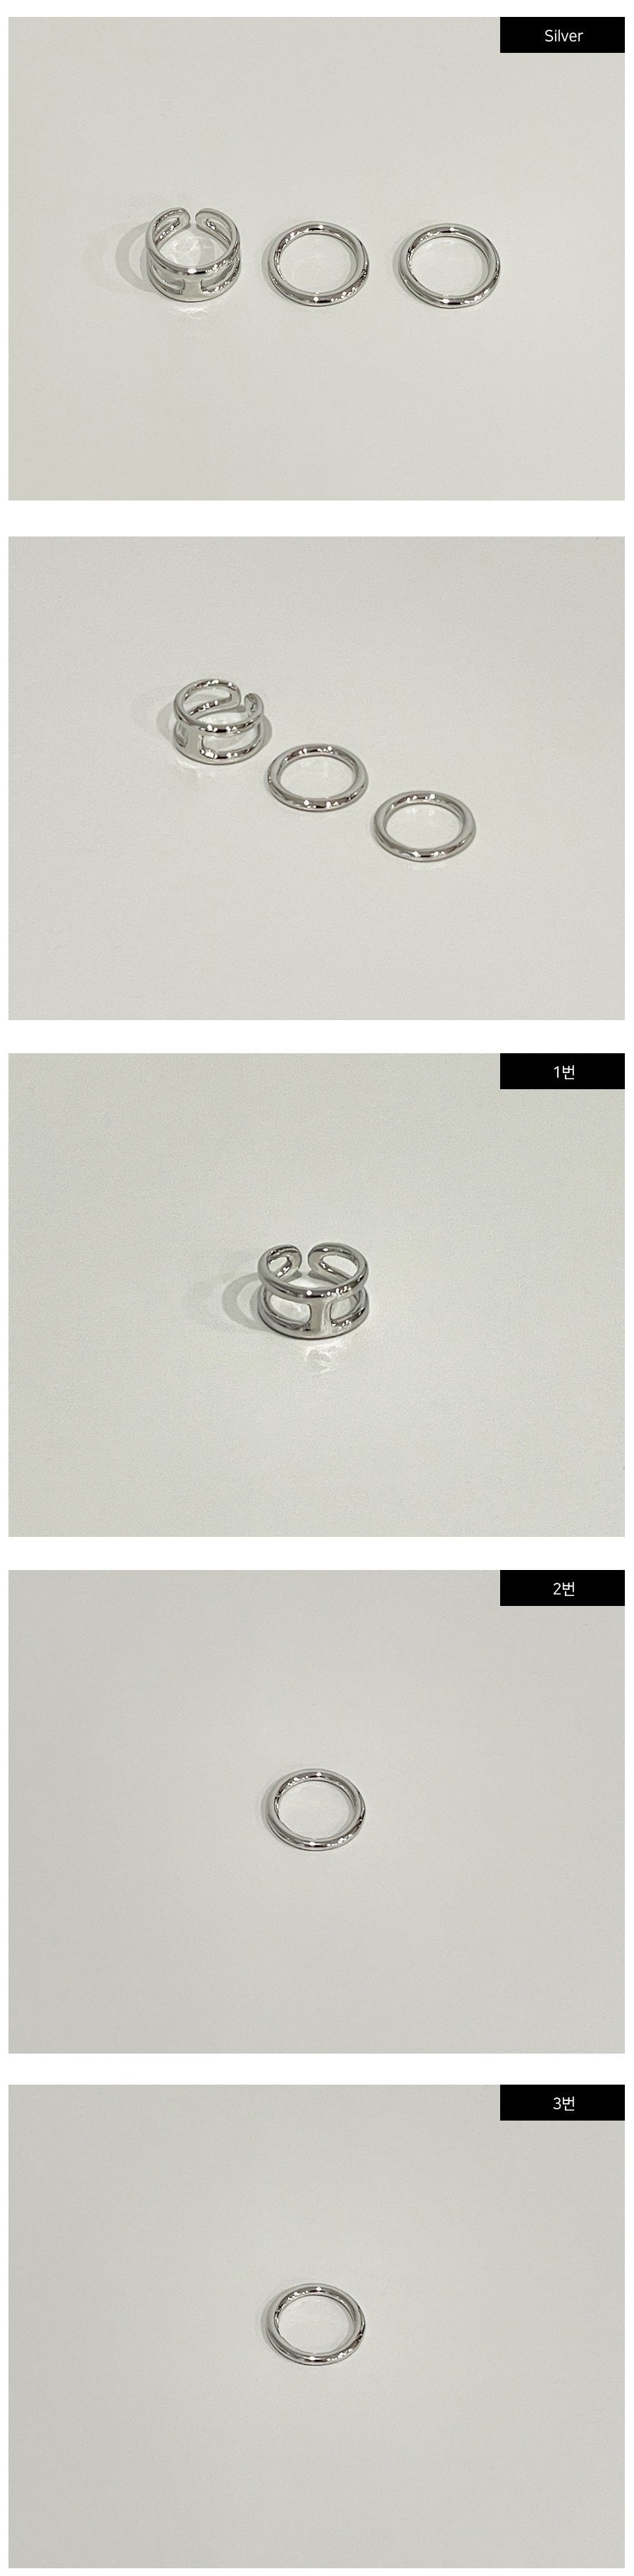 Ring Set of 3 CM13